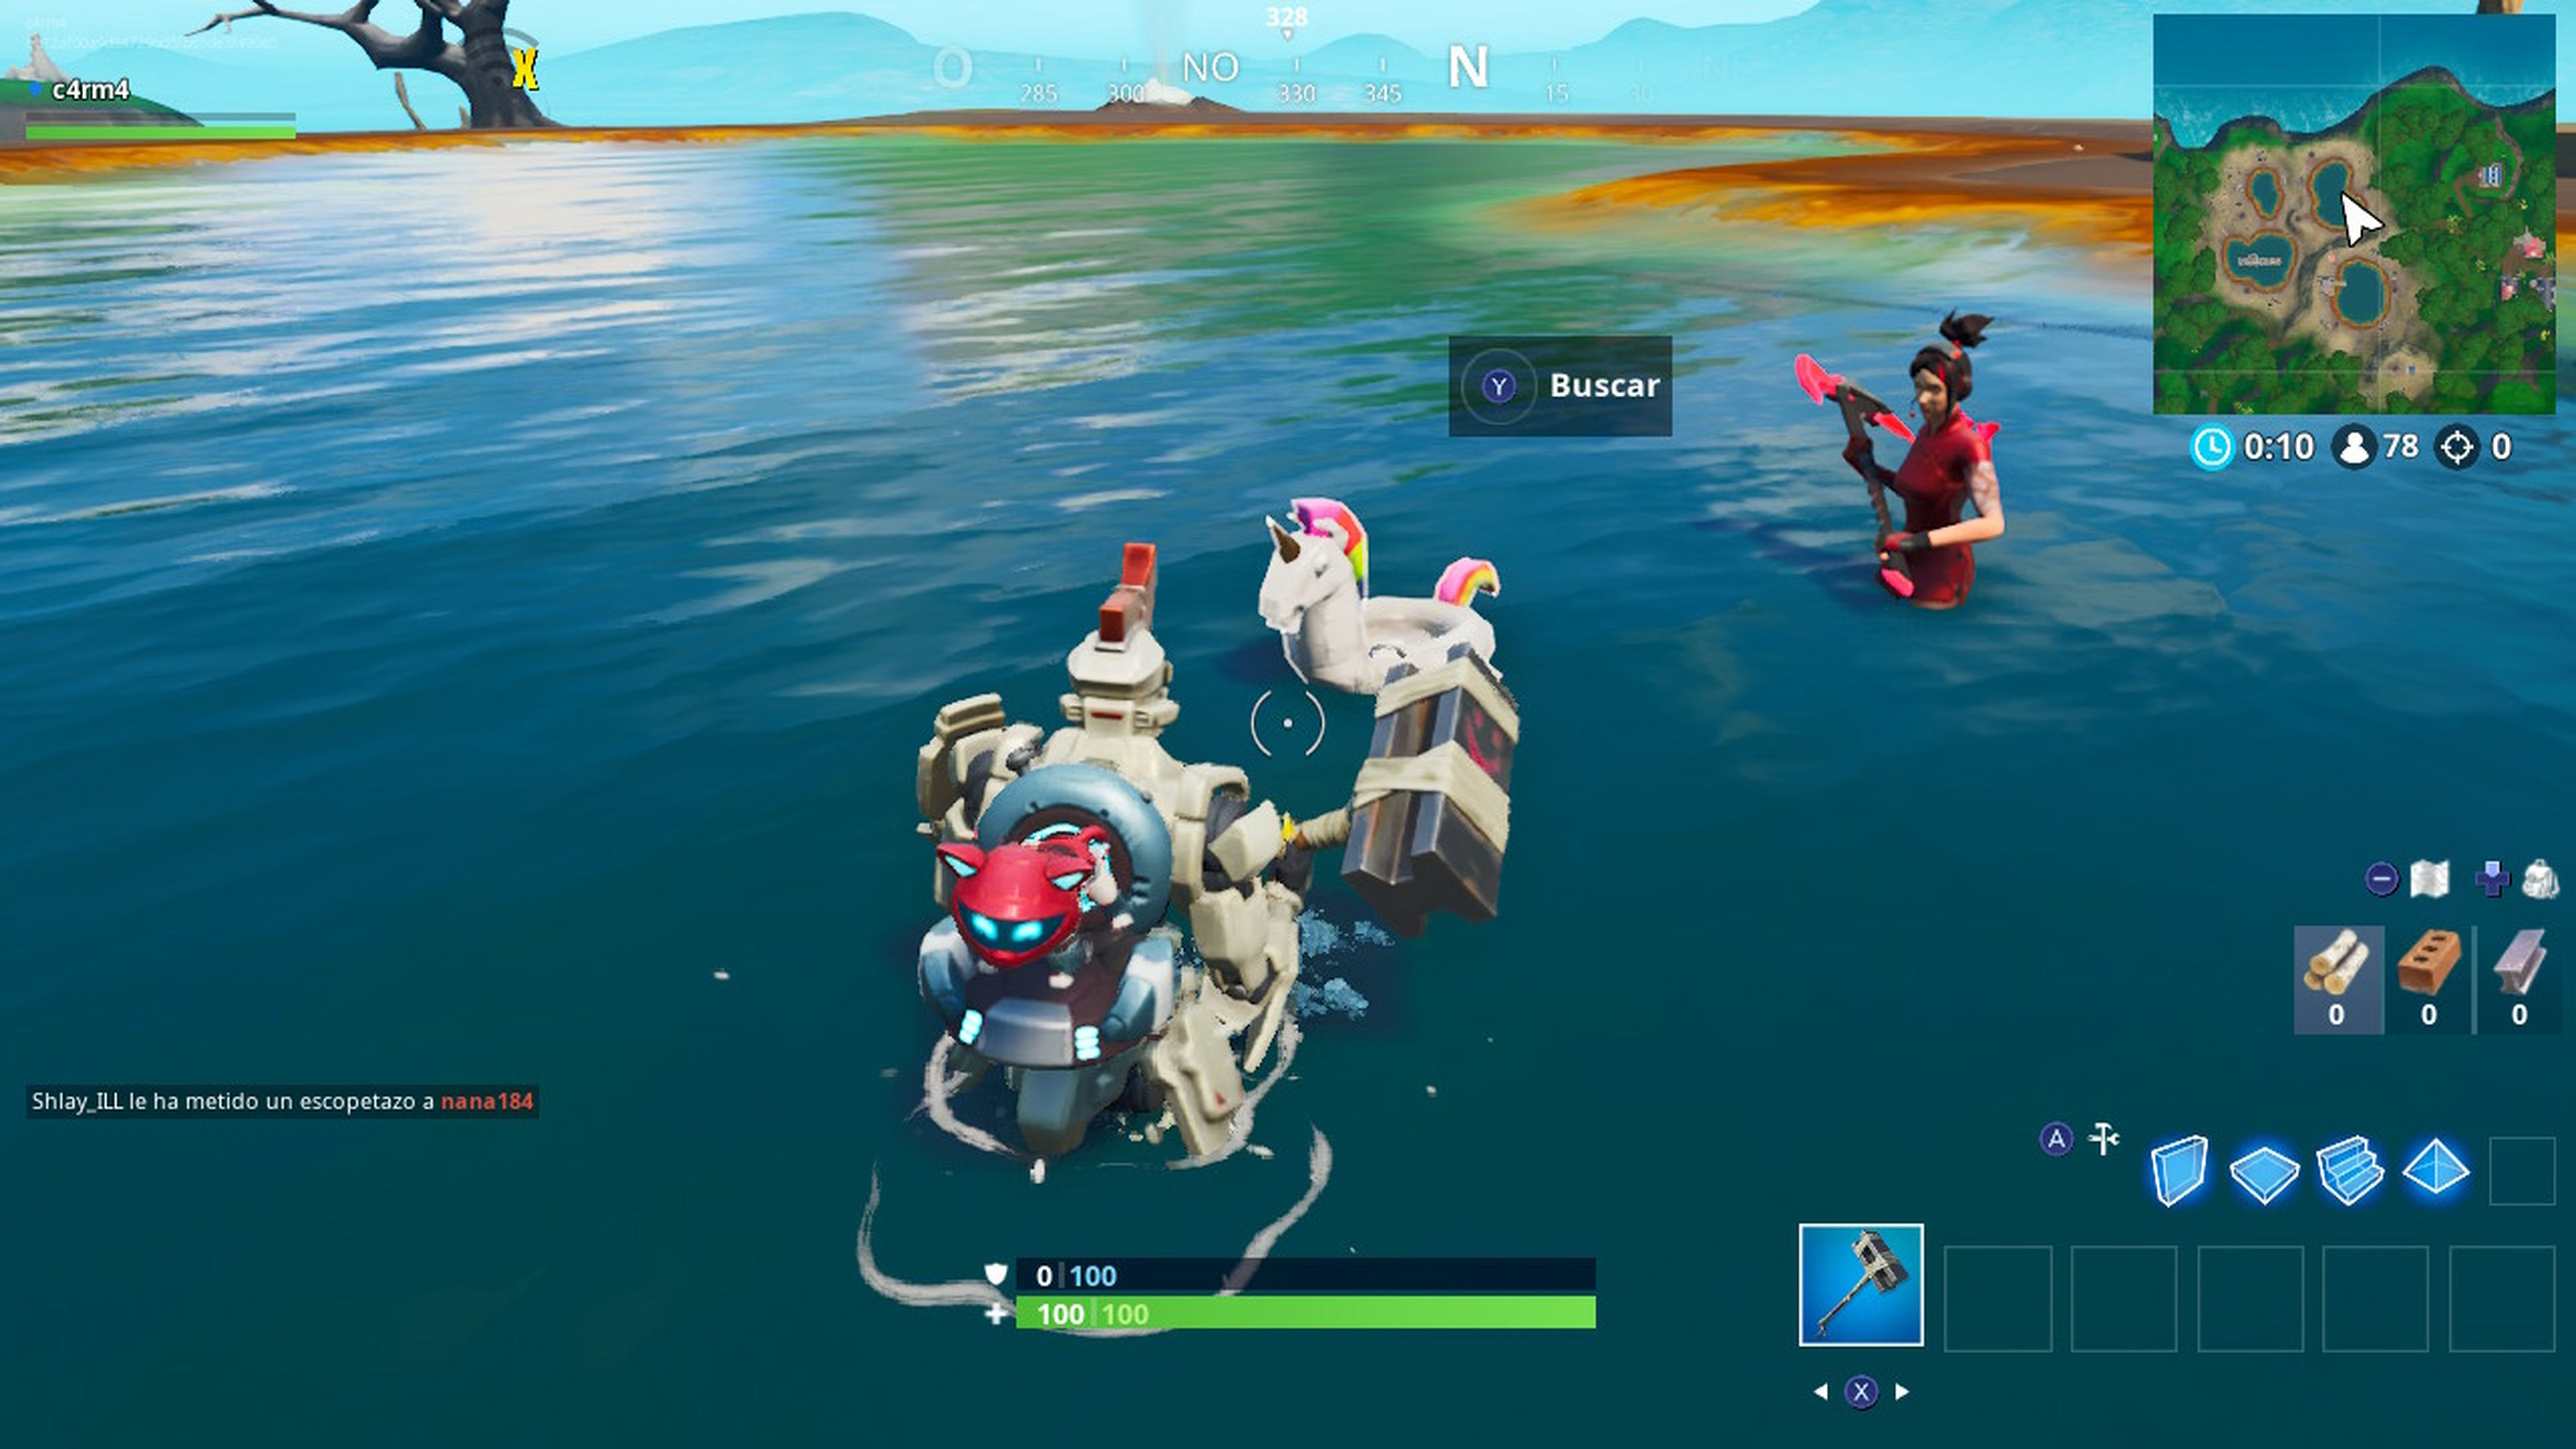 Busca flotadores de unicornio en pozas para nadar en Fortnite - localizaciones (14 dias de Fortnite)